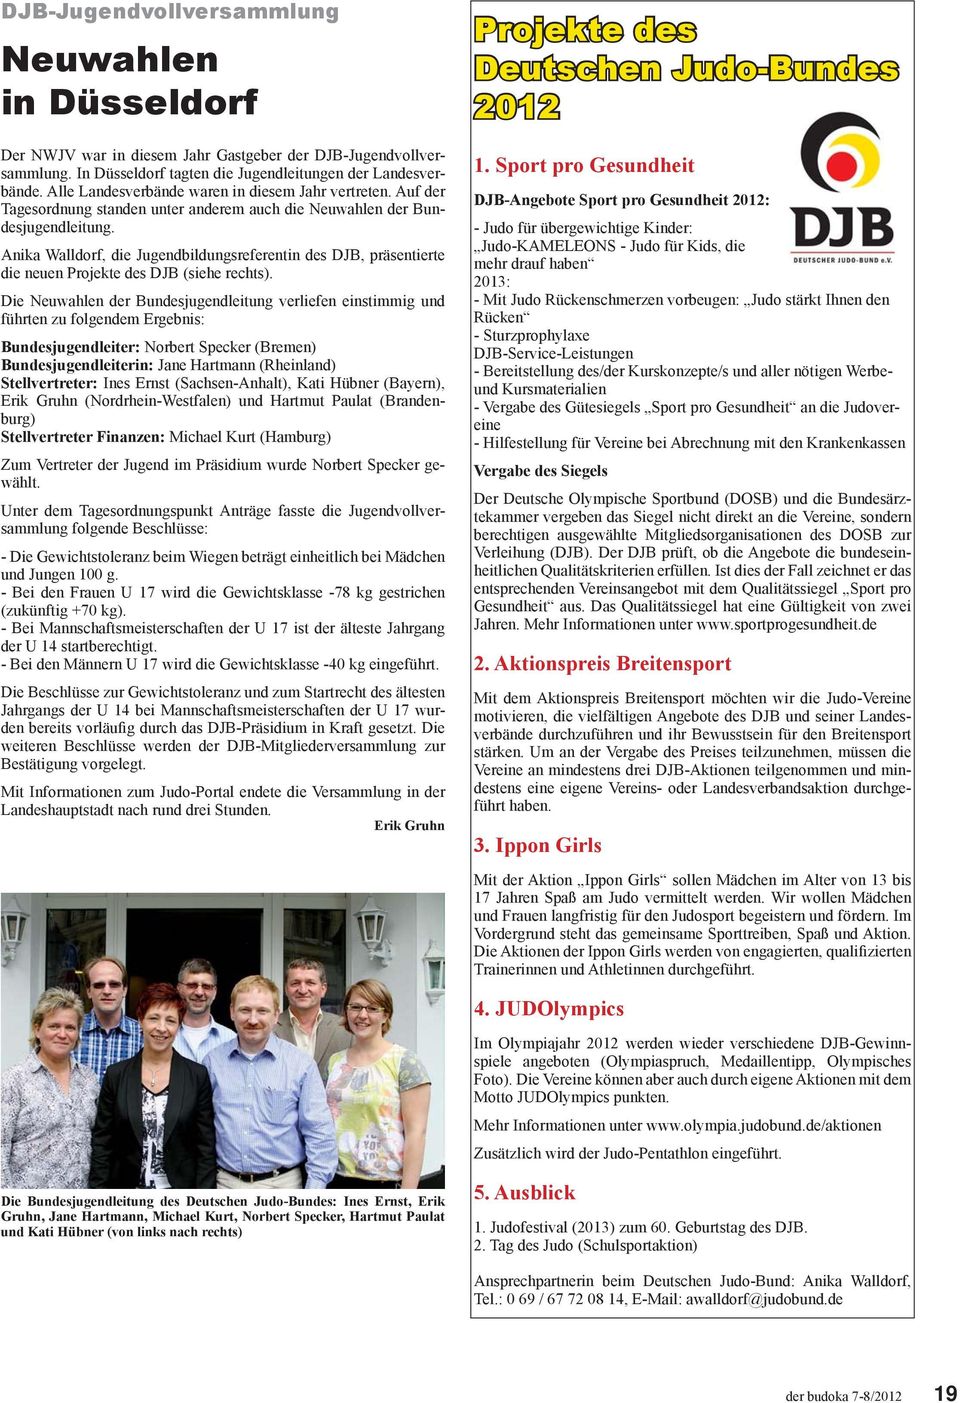 Anika Walldorf, die Jugendbildungsreferentin des DJB, präsentierte die neuen Projekte des DJB (siehe rechts).